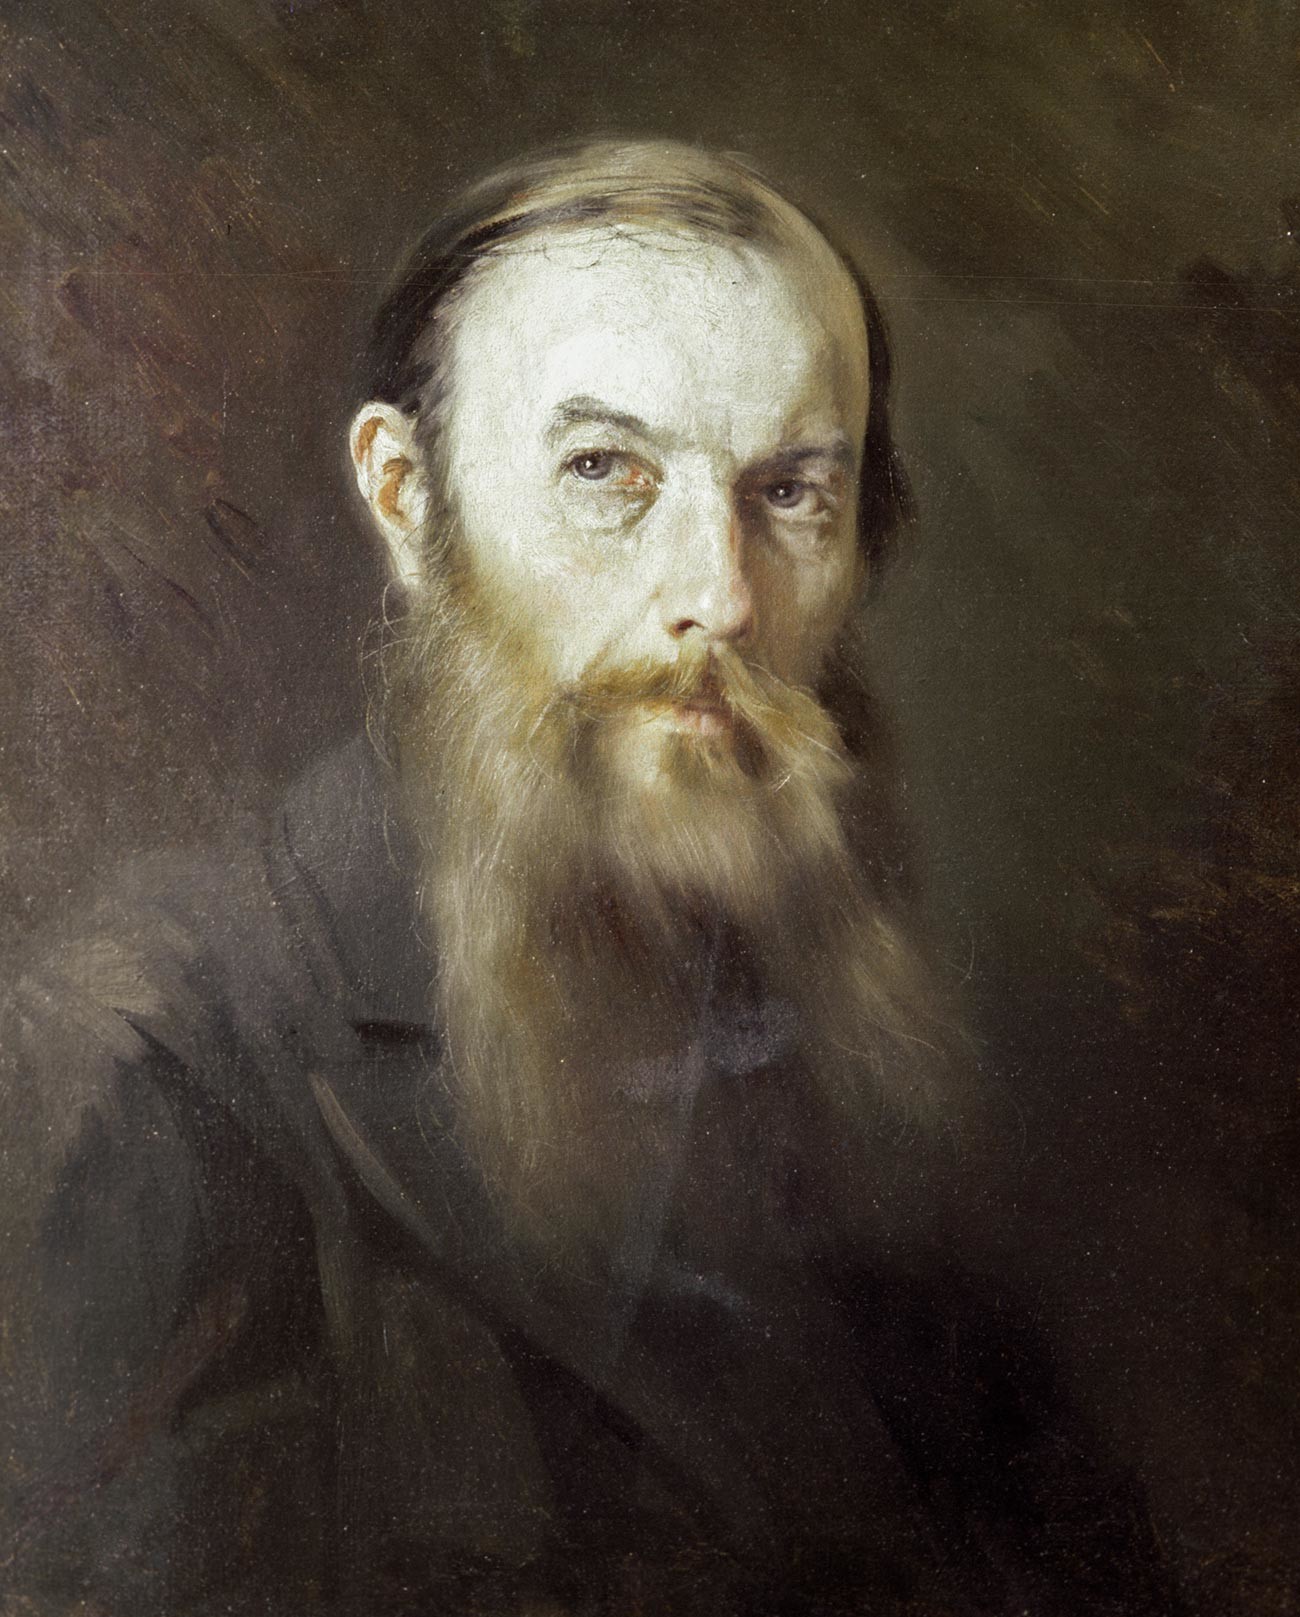 Riproduzione del ritratto di Fjodor Dostoevskij realizzato da M. Scherbatov; dalla collezione del museo-casa di Dostoevskij